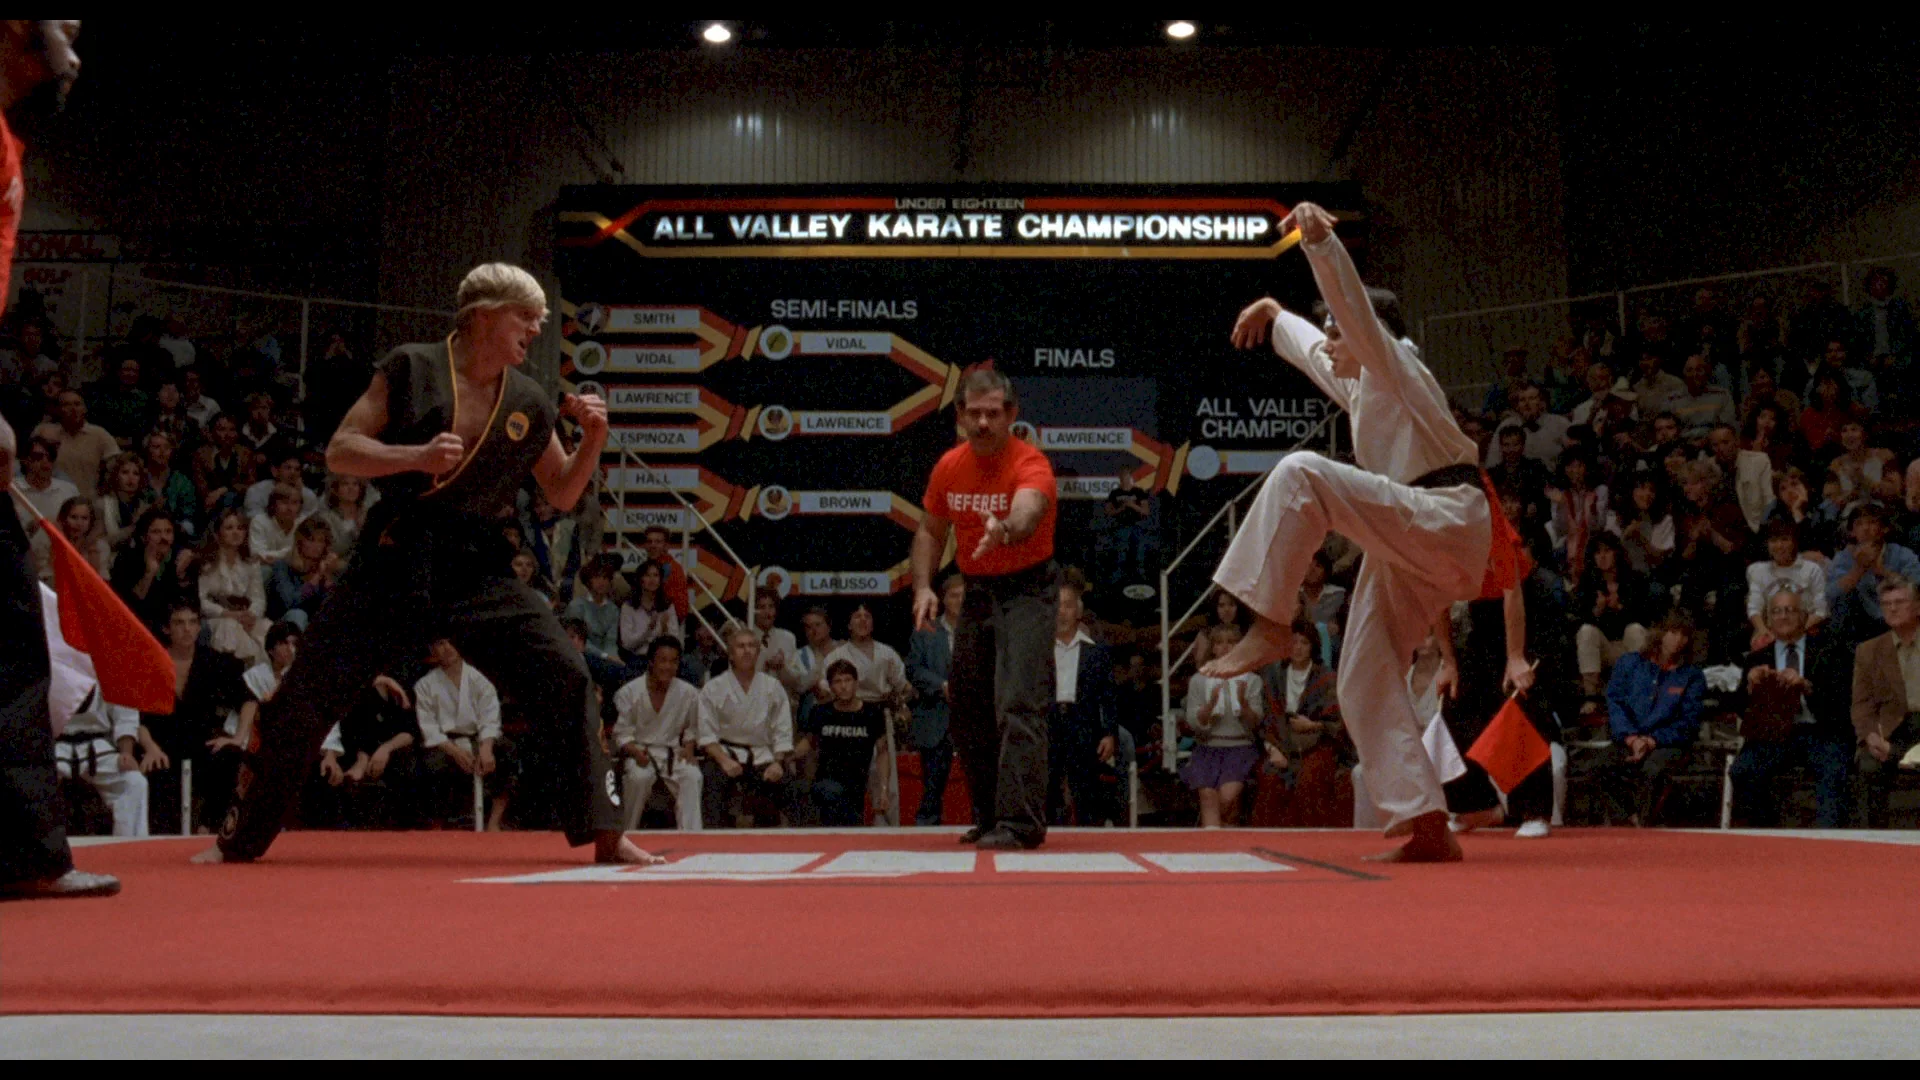 Photo du film : Karate kid, le moment de vérité